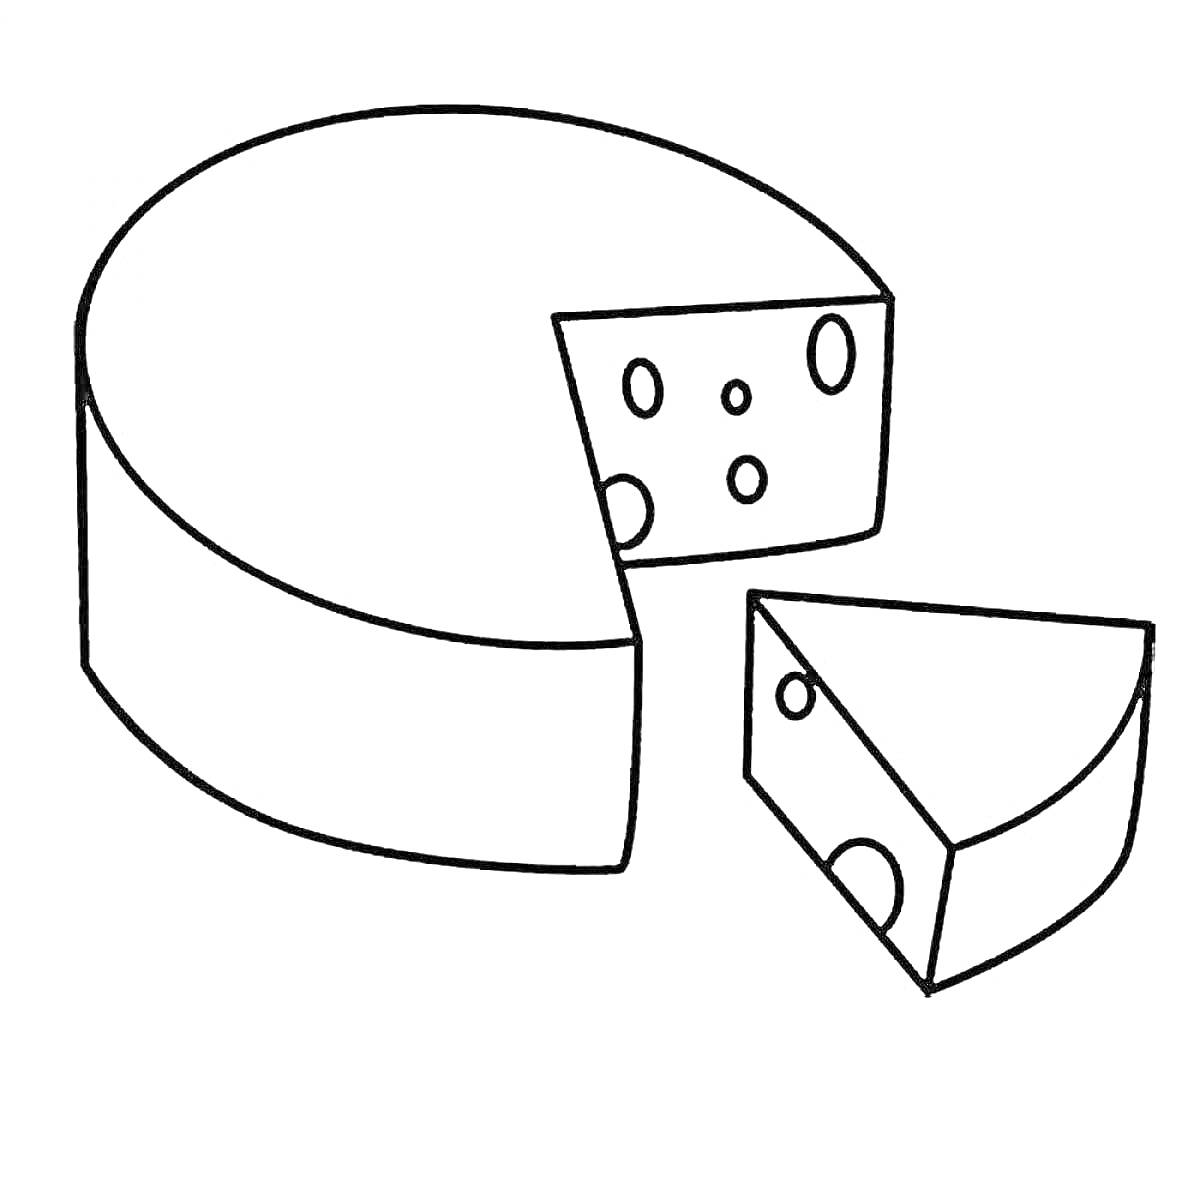 Раскраска кусок сыра с дырочками из колеса сыра